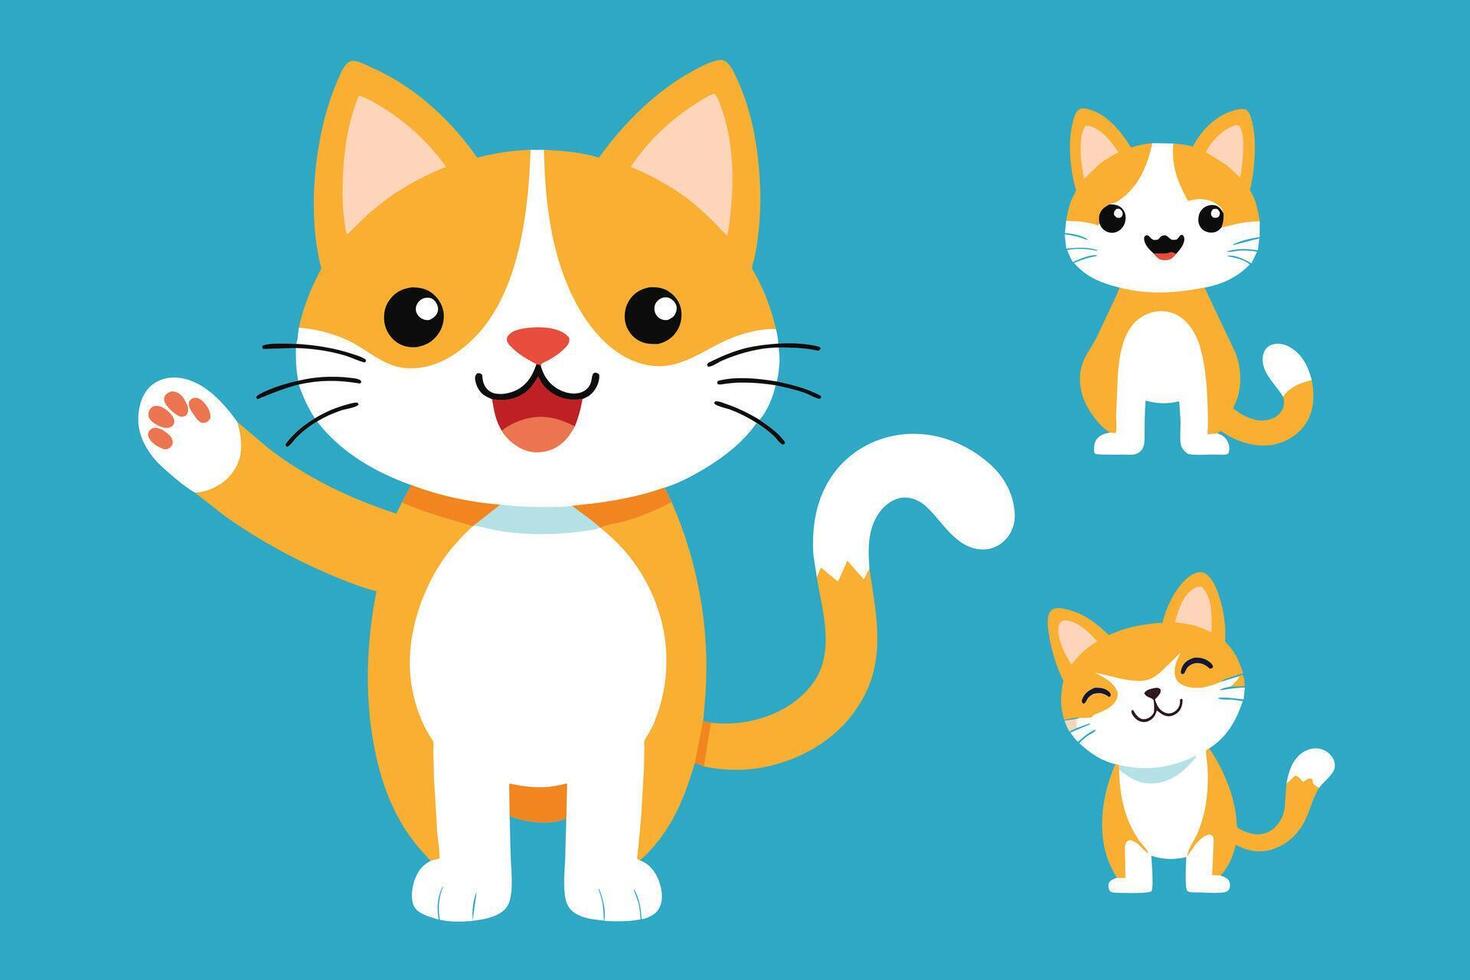 set di simpatico gatto in diverse pose fumetto illustrazione vettore